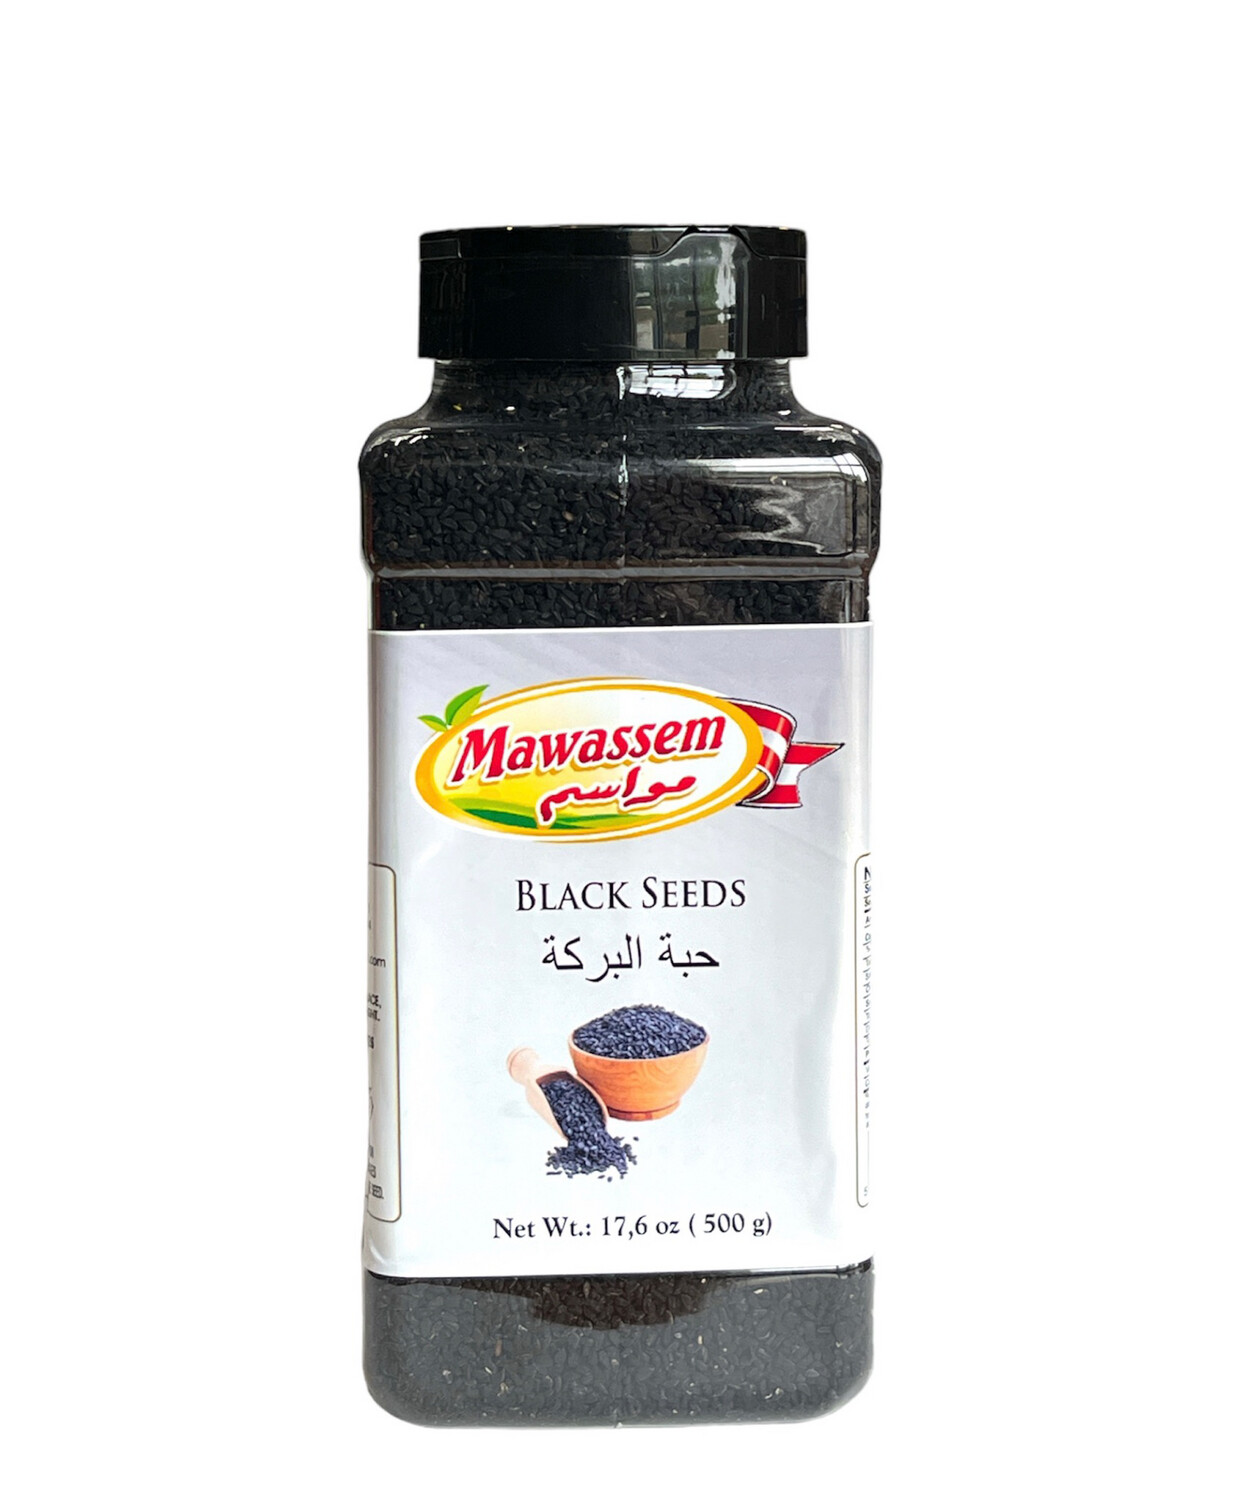 Mawassem Black Seeds 12x500g